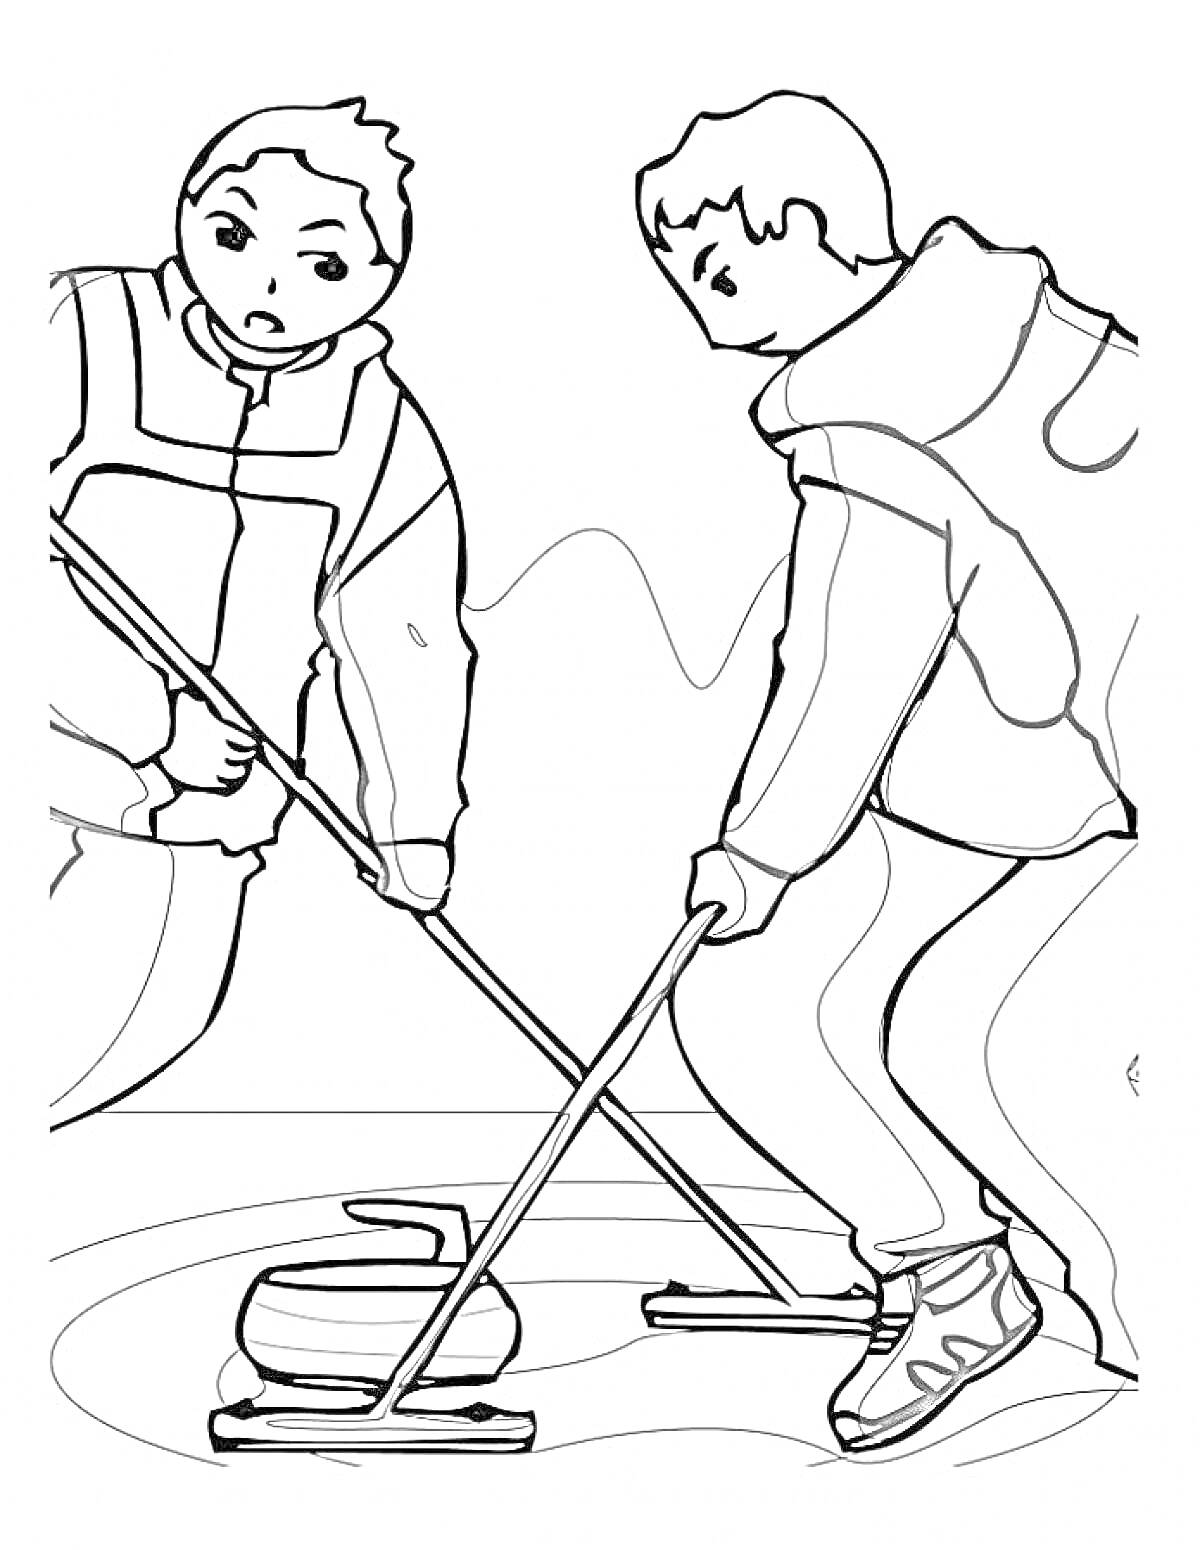 Раскраска Два человека играют в кёрлинг, держа щётки и направляя камень по льду.